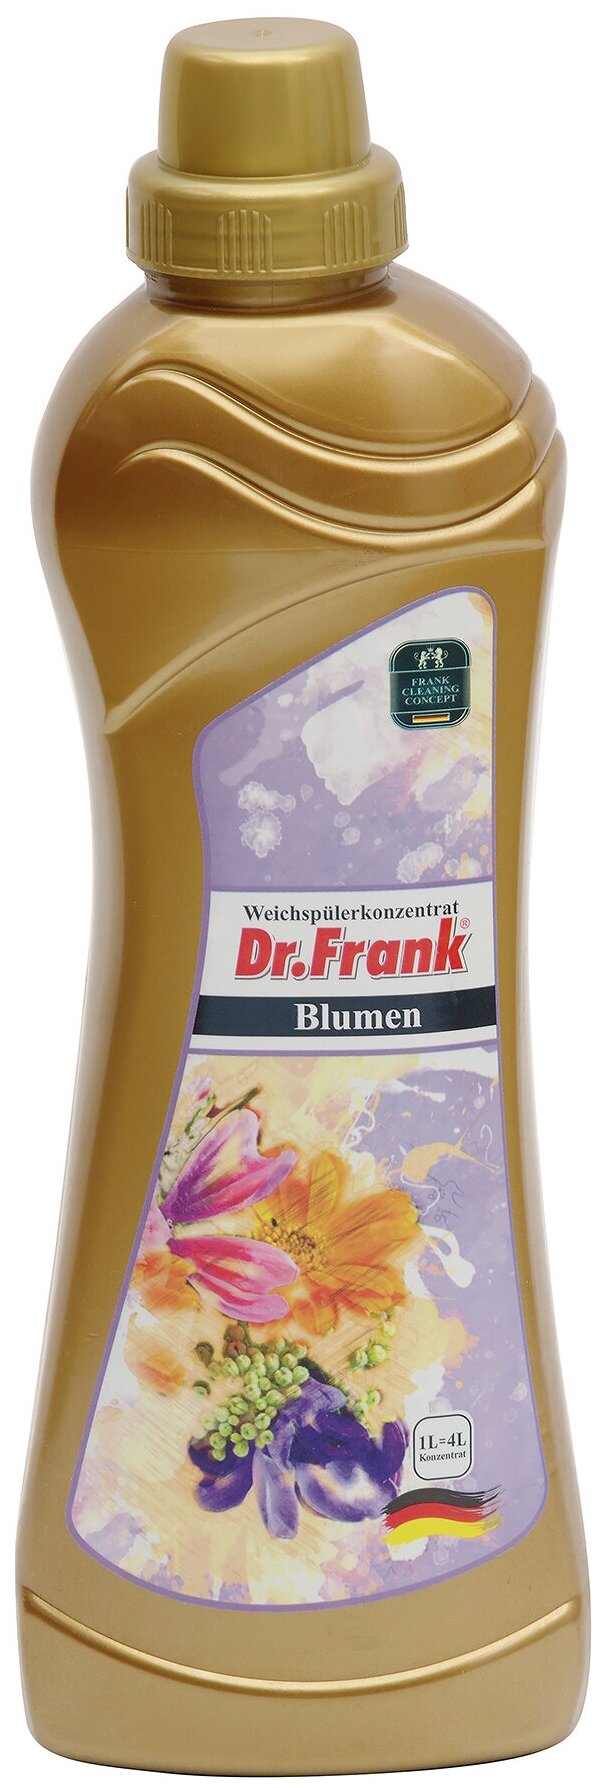 Кондиционер для белья с цветочным ароматом Dr.Frank Blumen 35 стирок 1 л. DRO001